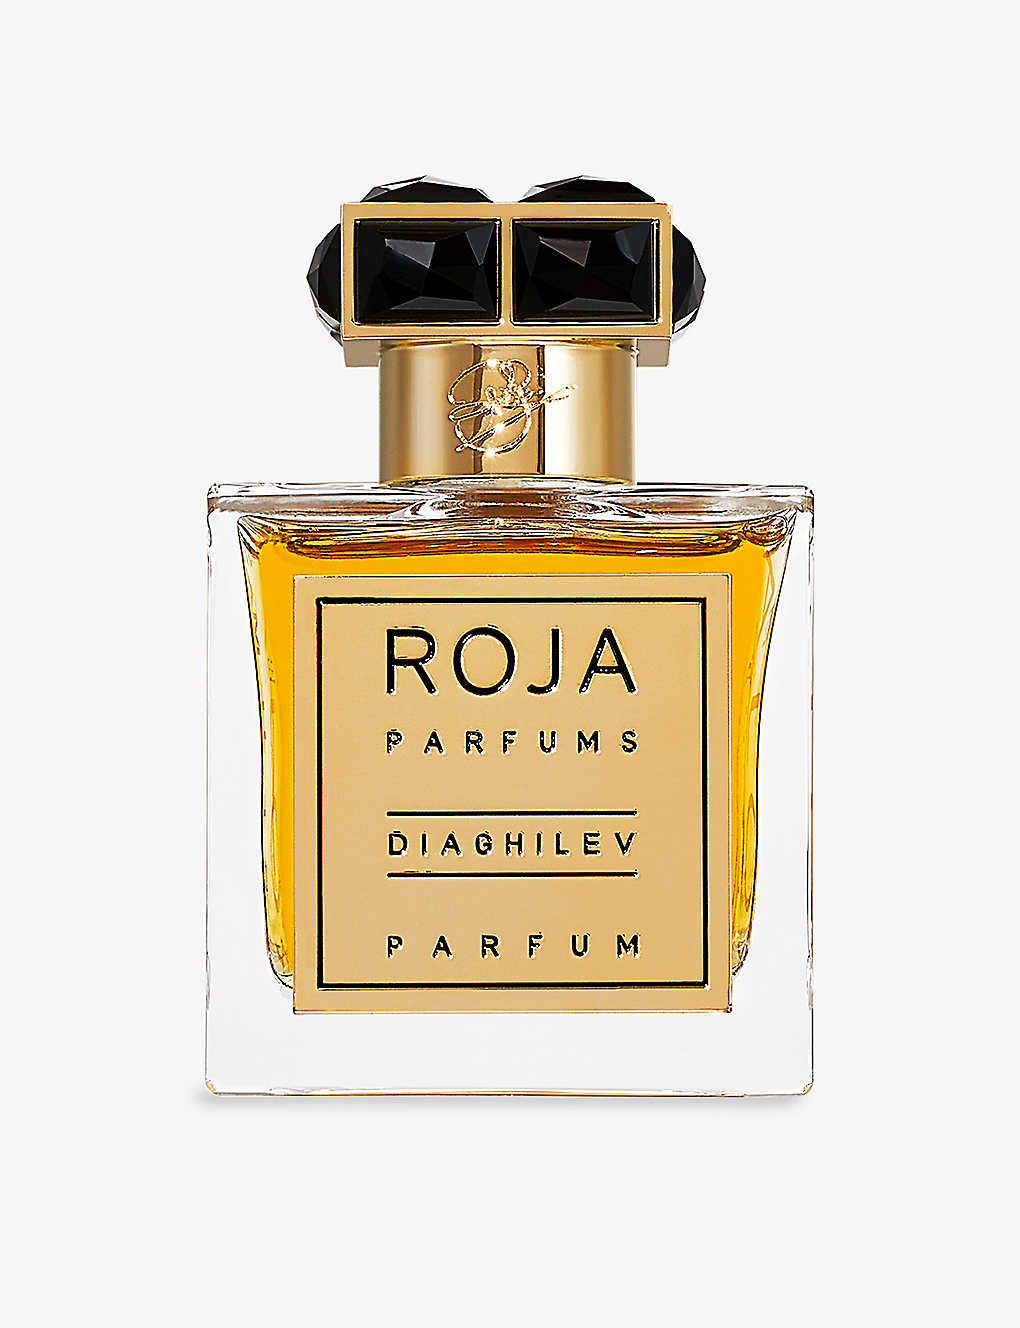 Roja Parfums Diaghilev Parfum